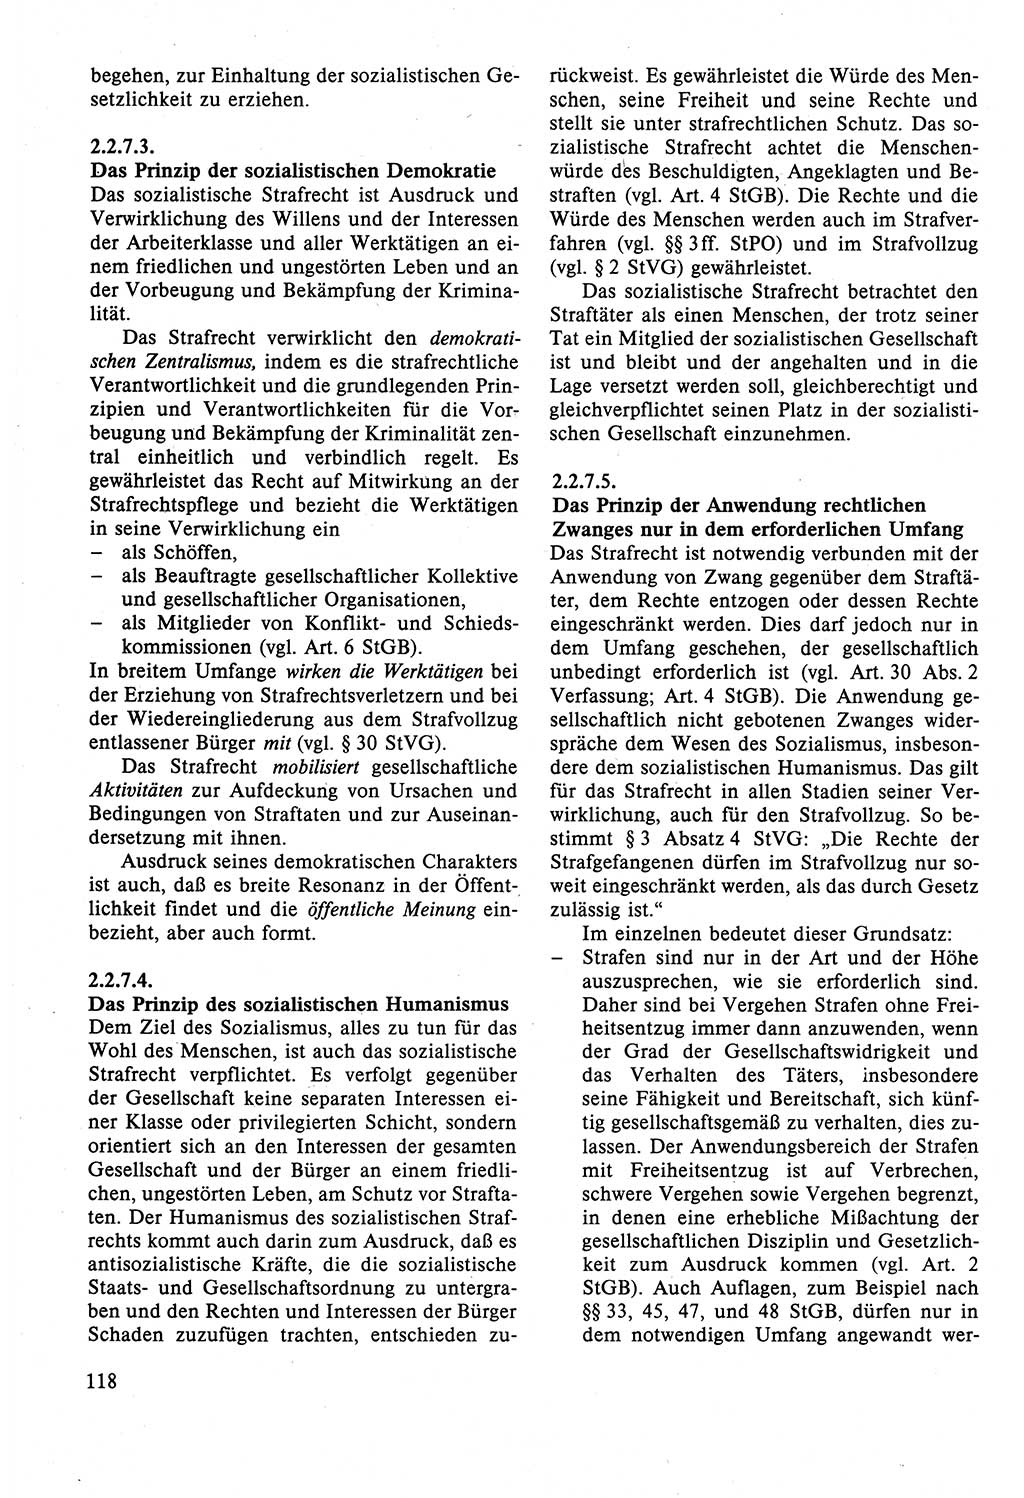 Strafrecht der DDR (Deutsche Demokratische Republik), Lehrbuch 1988, Seite 118 (Strafr. DDR Lb. 1988, S. 118)